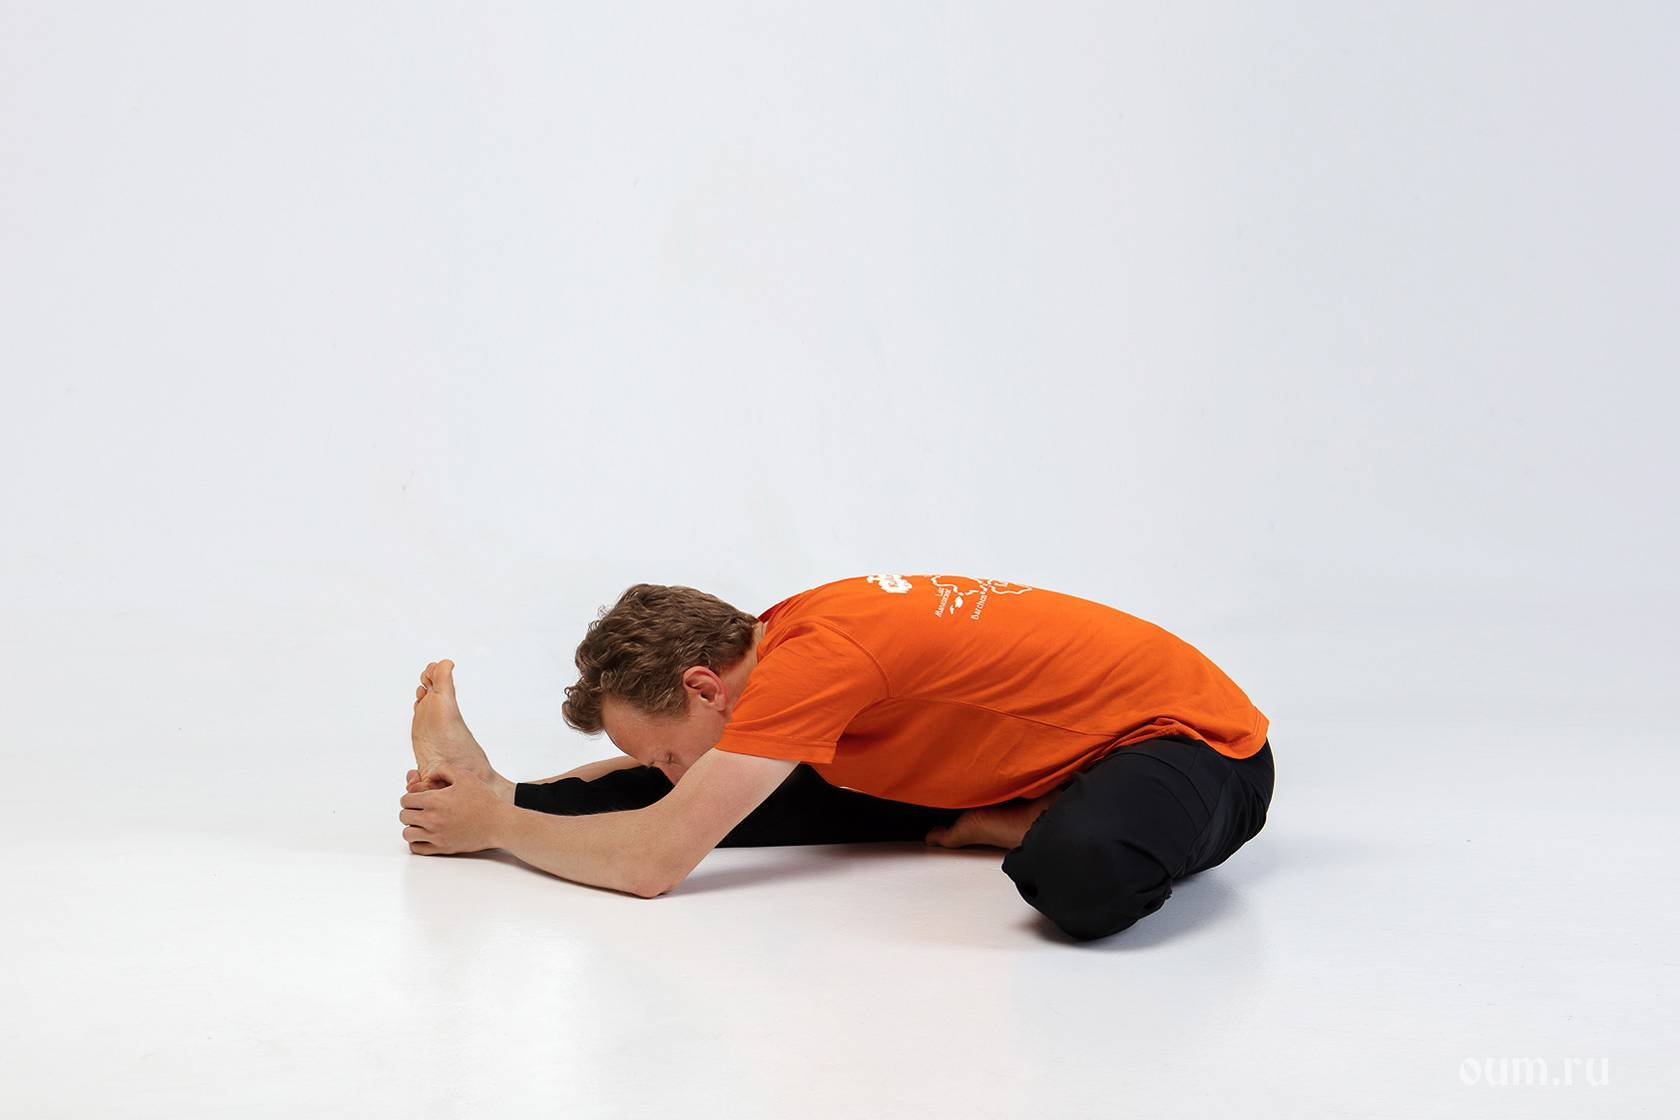 Паривритта триконасана или поза перевернутого треугольника в йоге: техника выполнения, польза, противопоказания